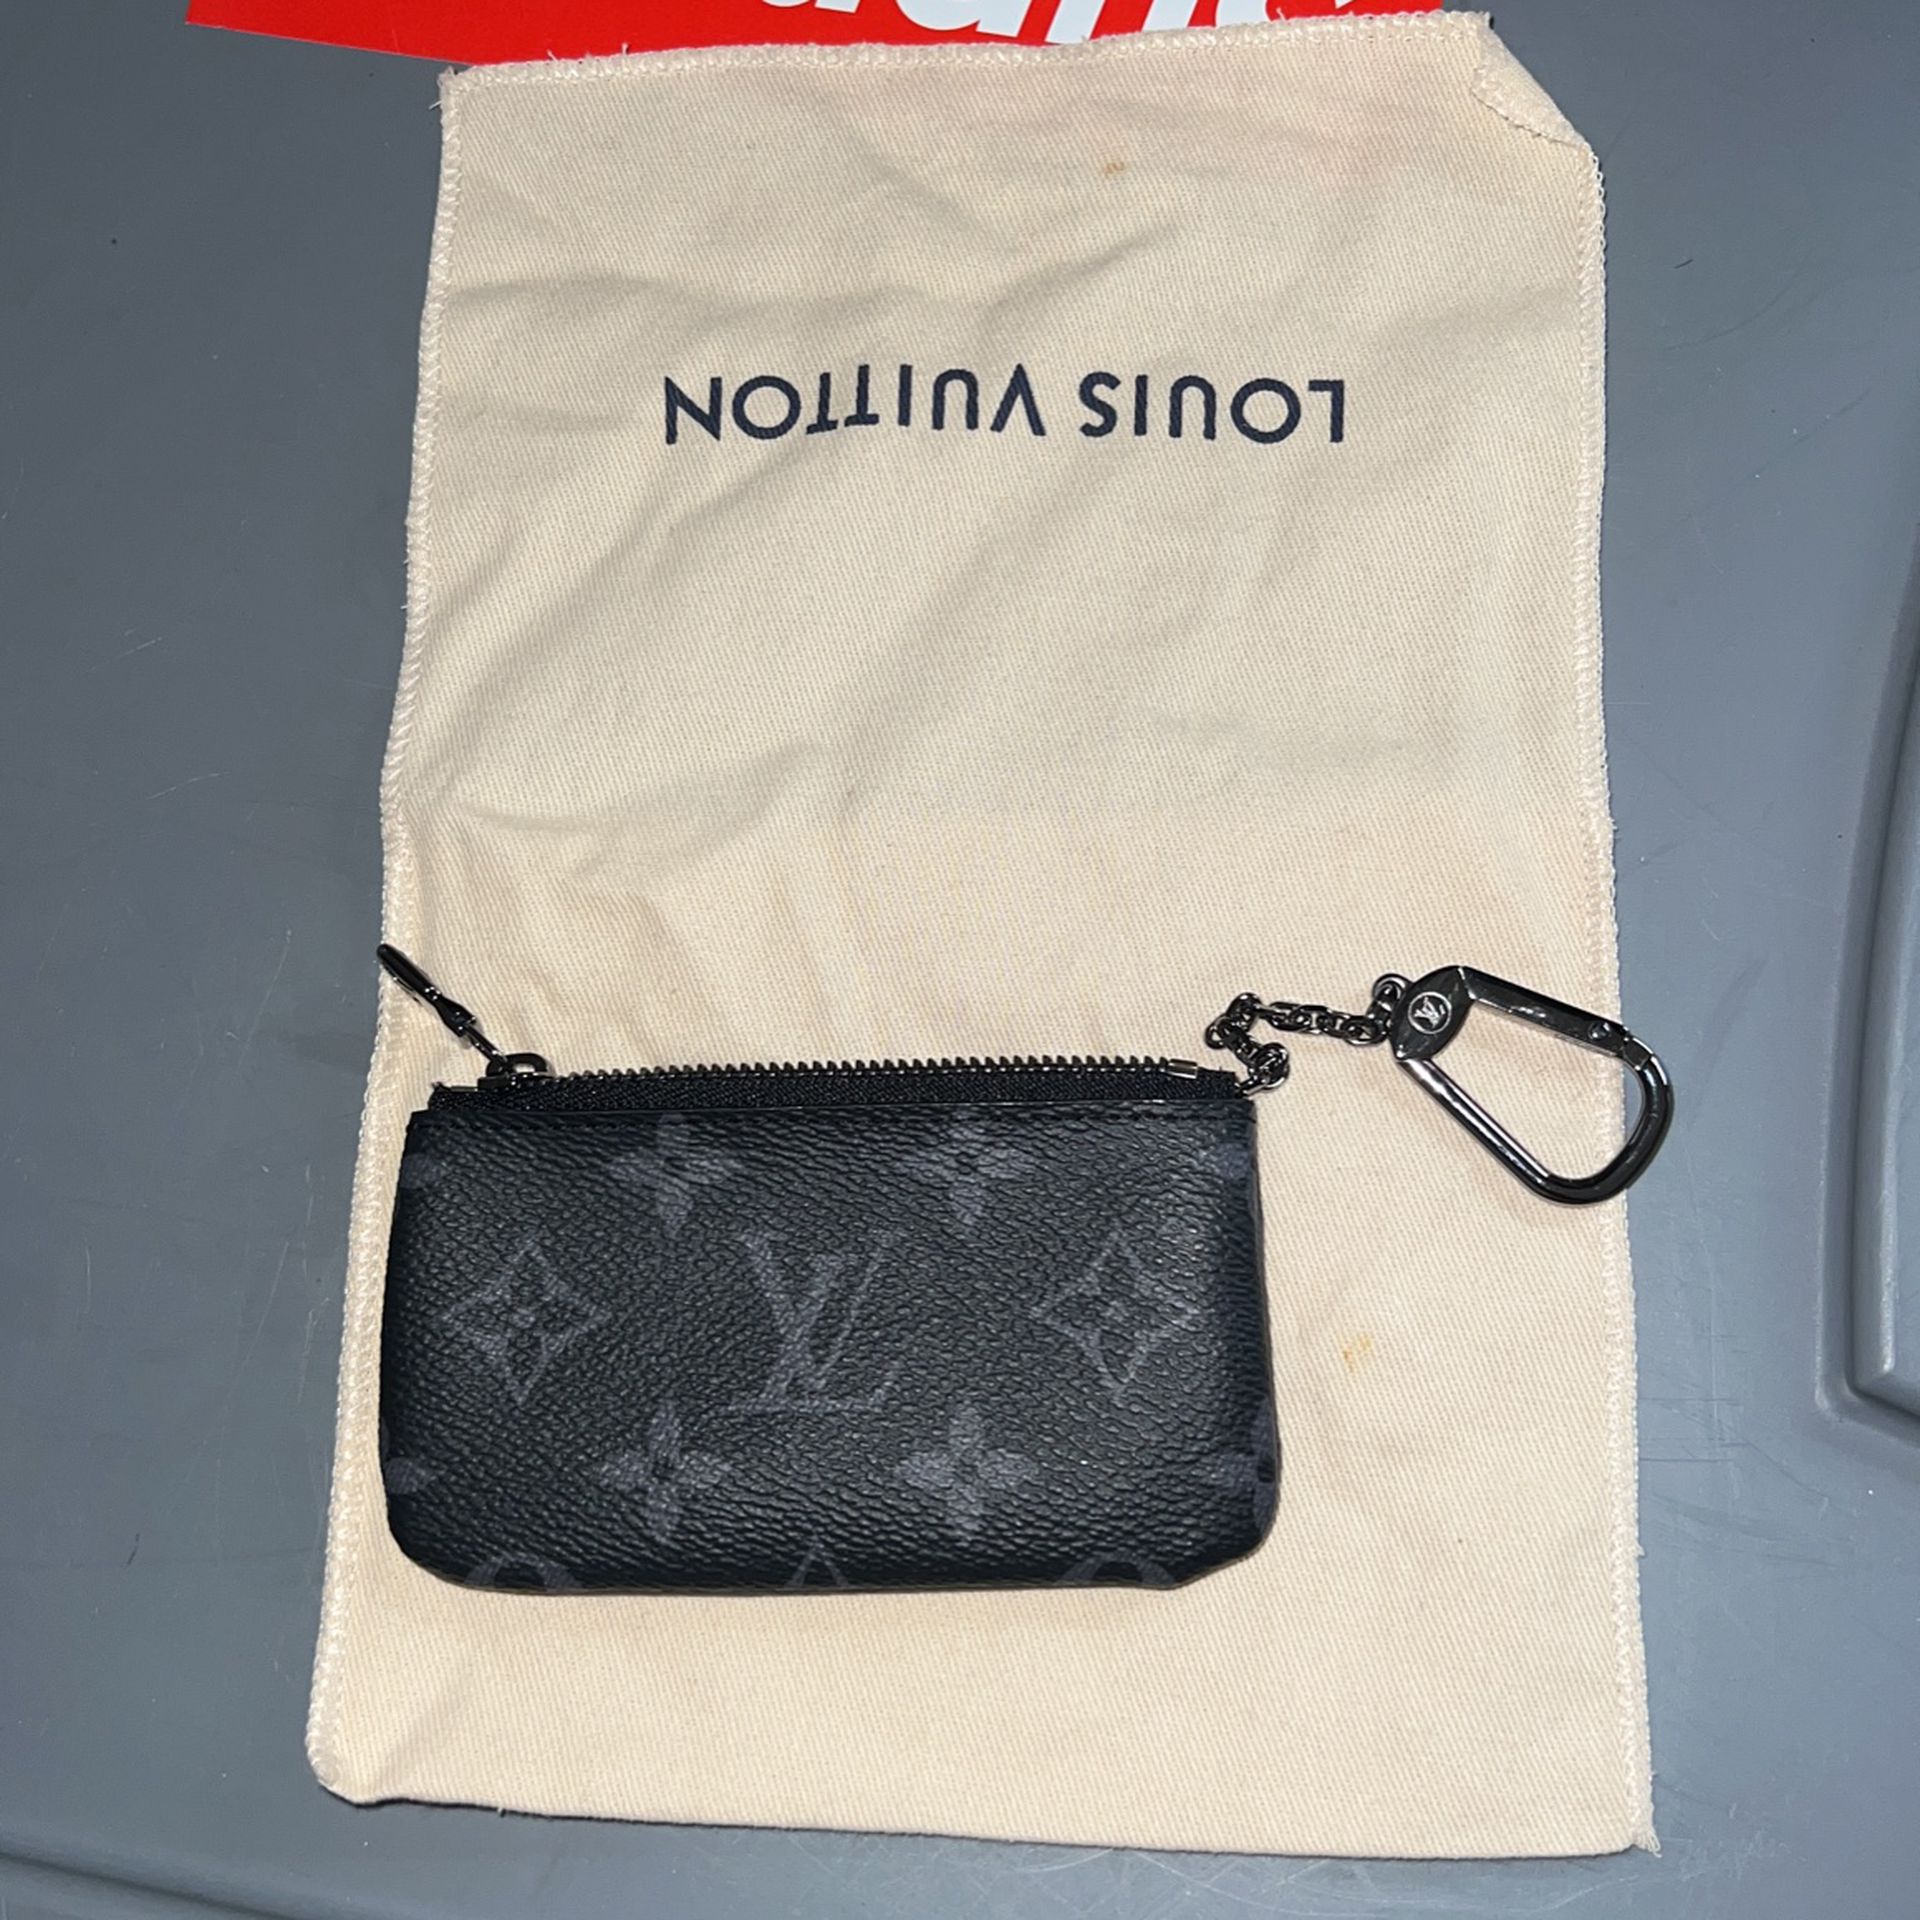 Louis Vuitton Key Wallet